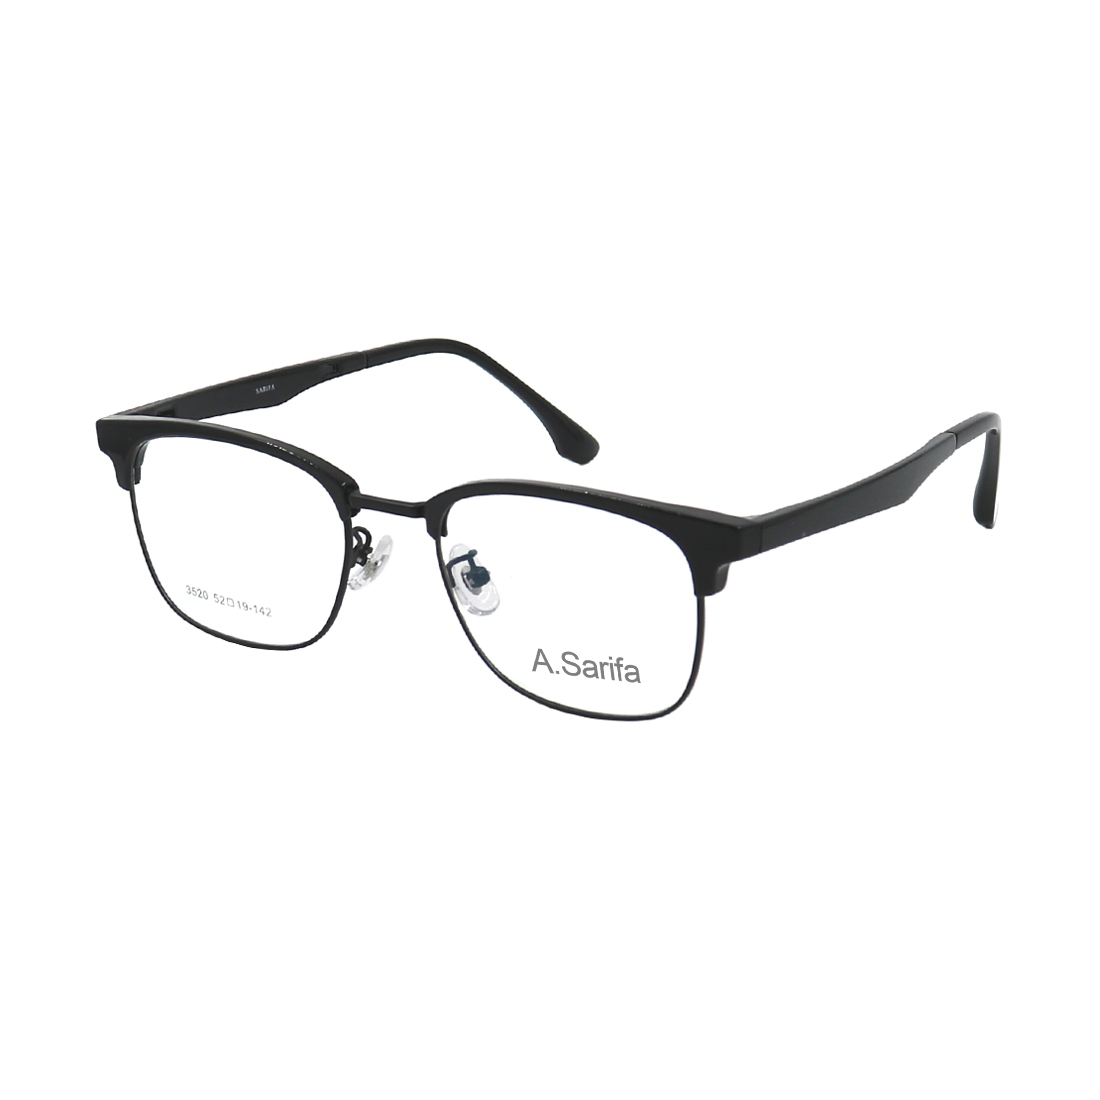 Gọng kính, mắt kính SARIFA 3520 (52-19-142) chính hãng, nhiều màu lựa chọn